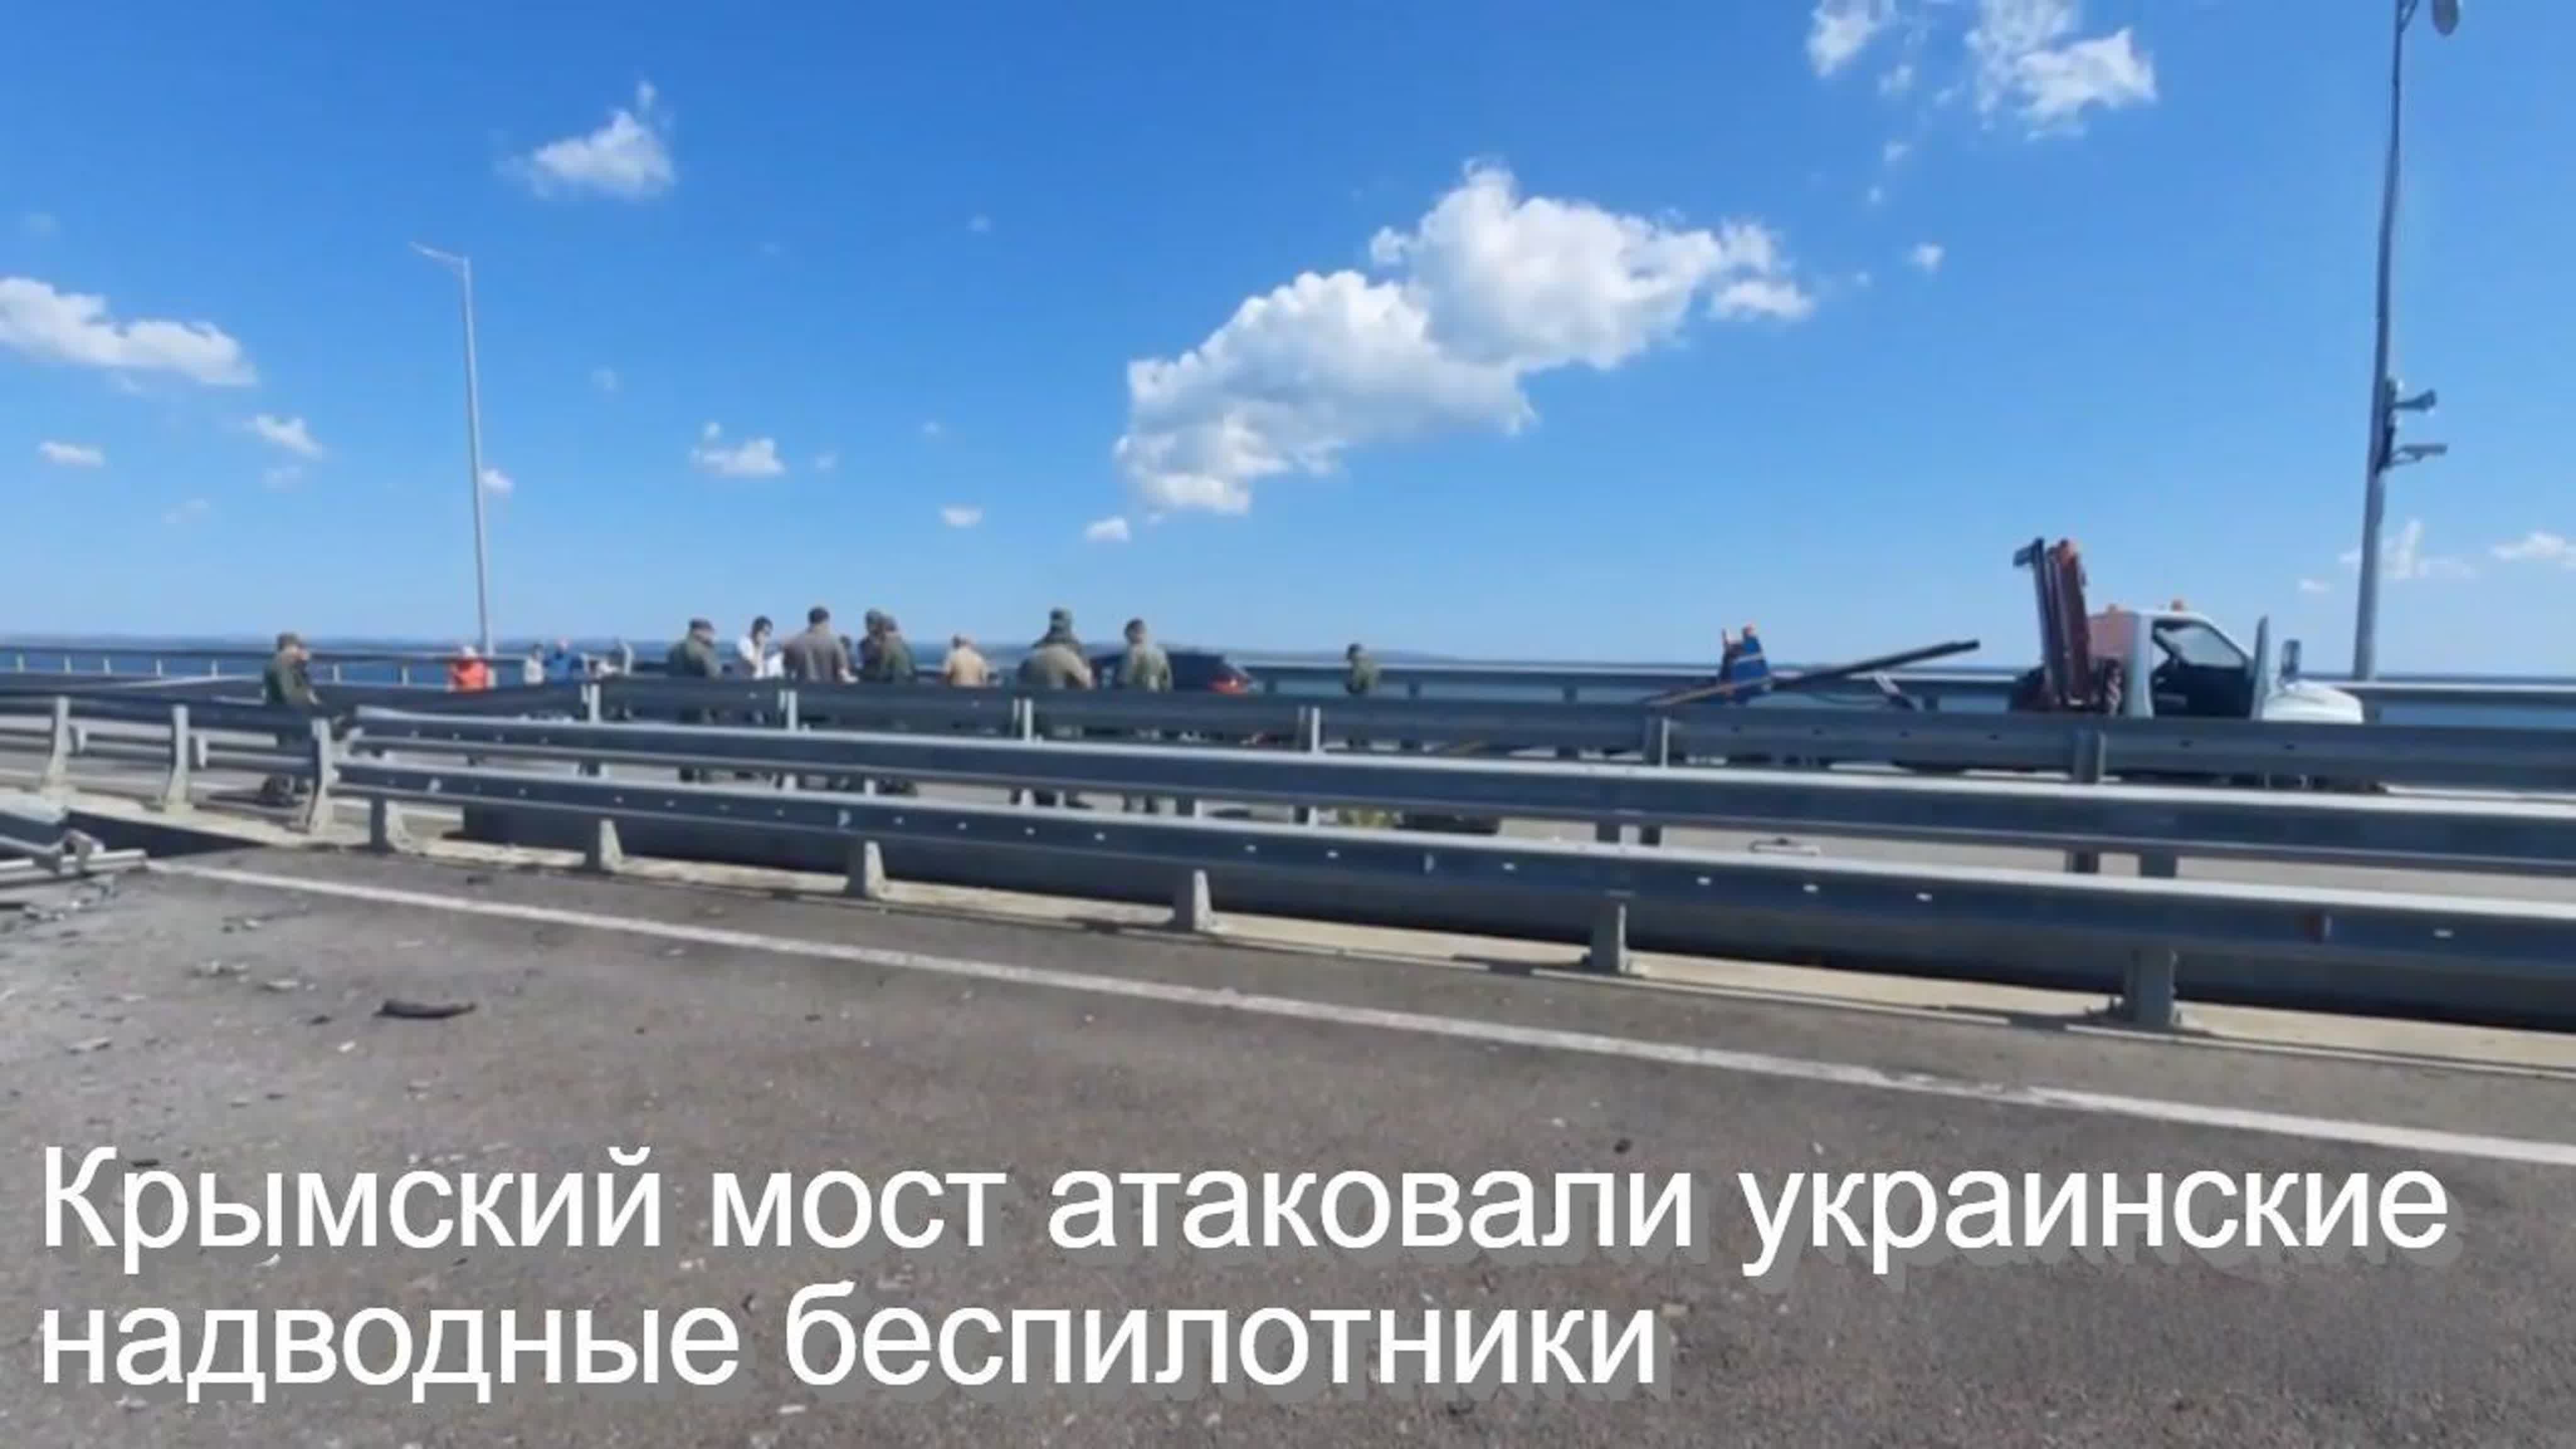 Ч.П. Крымский мост